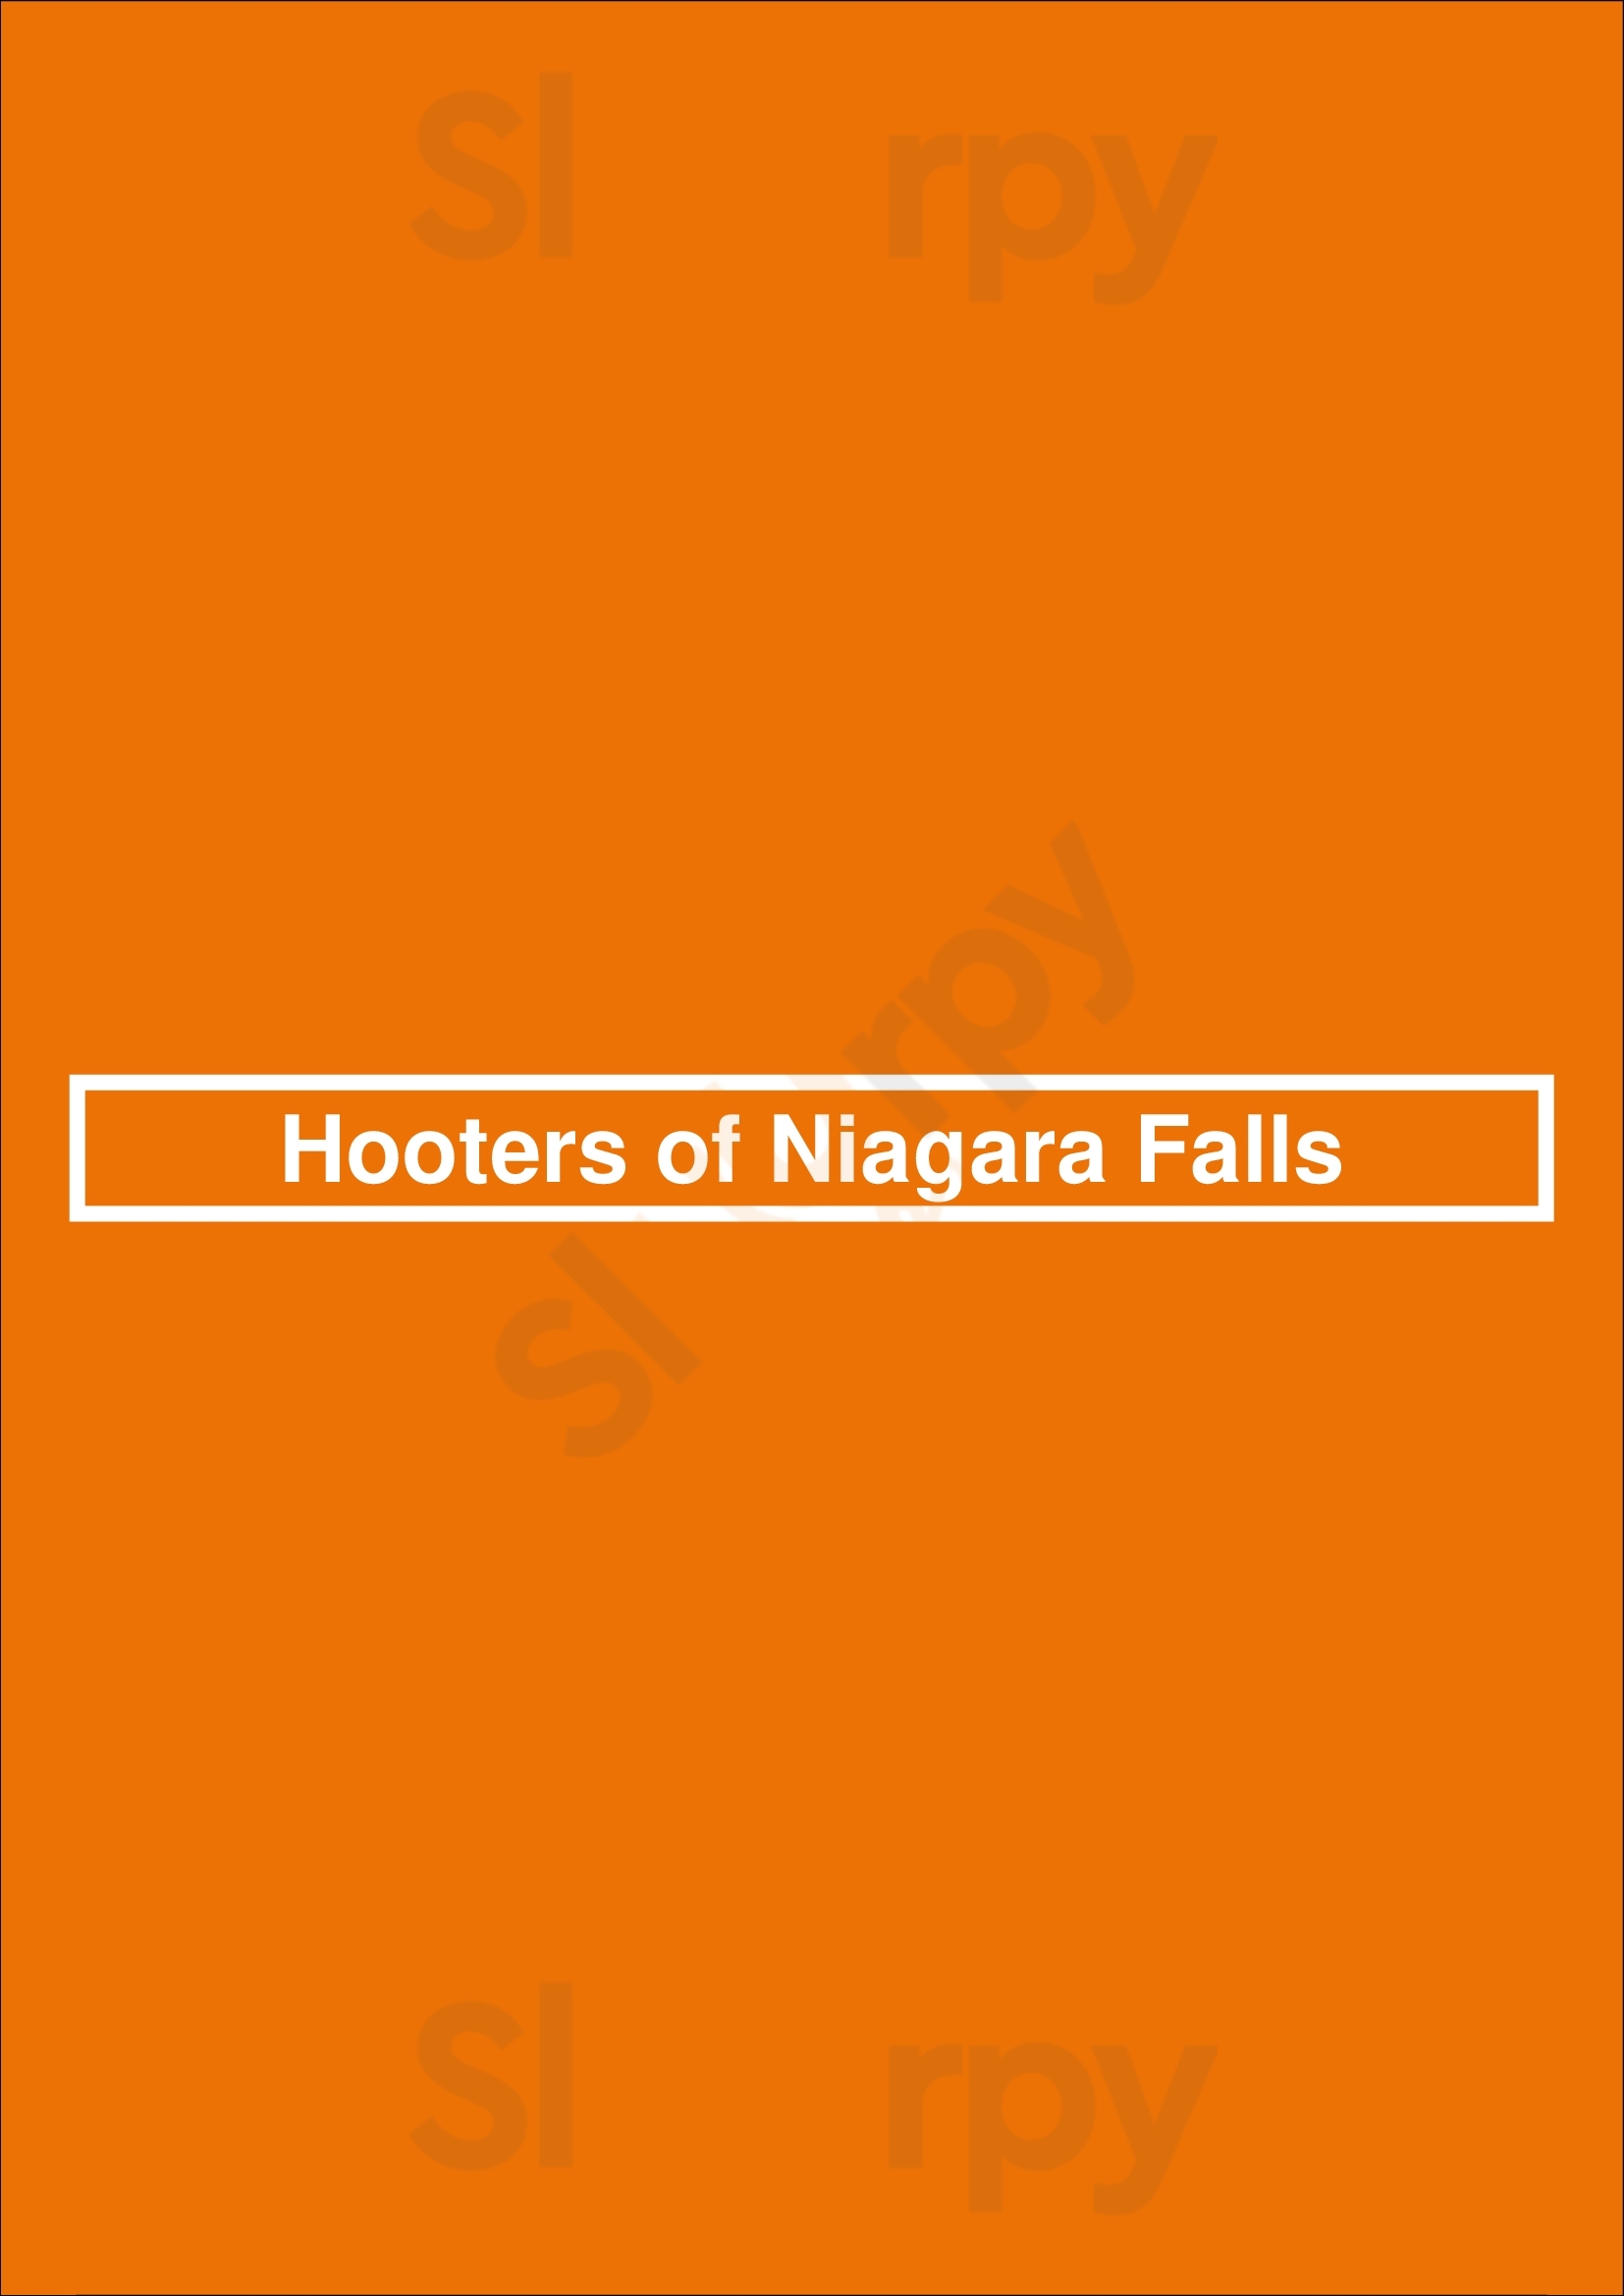 Hooters Of Niagara Falls Niagara Falls Menu - 1